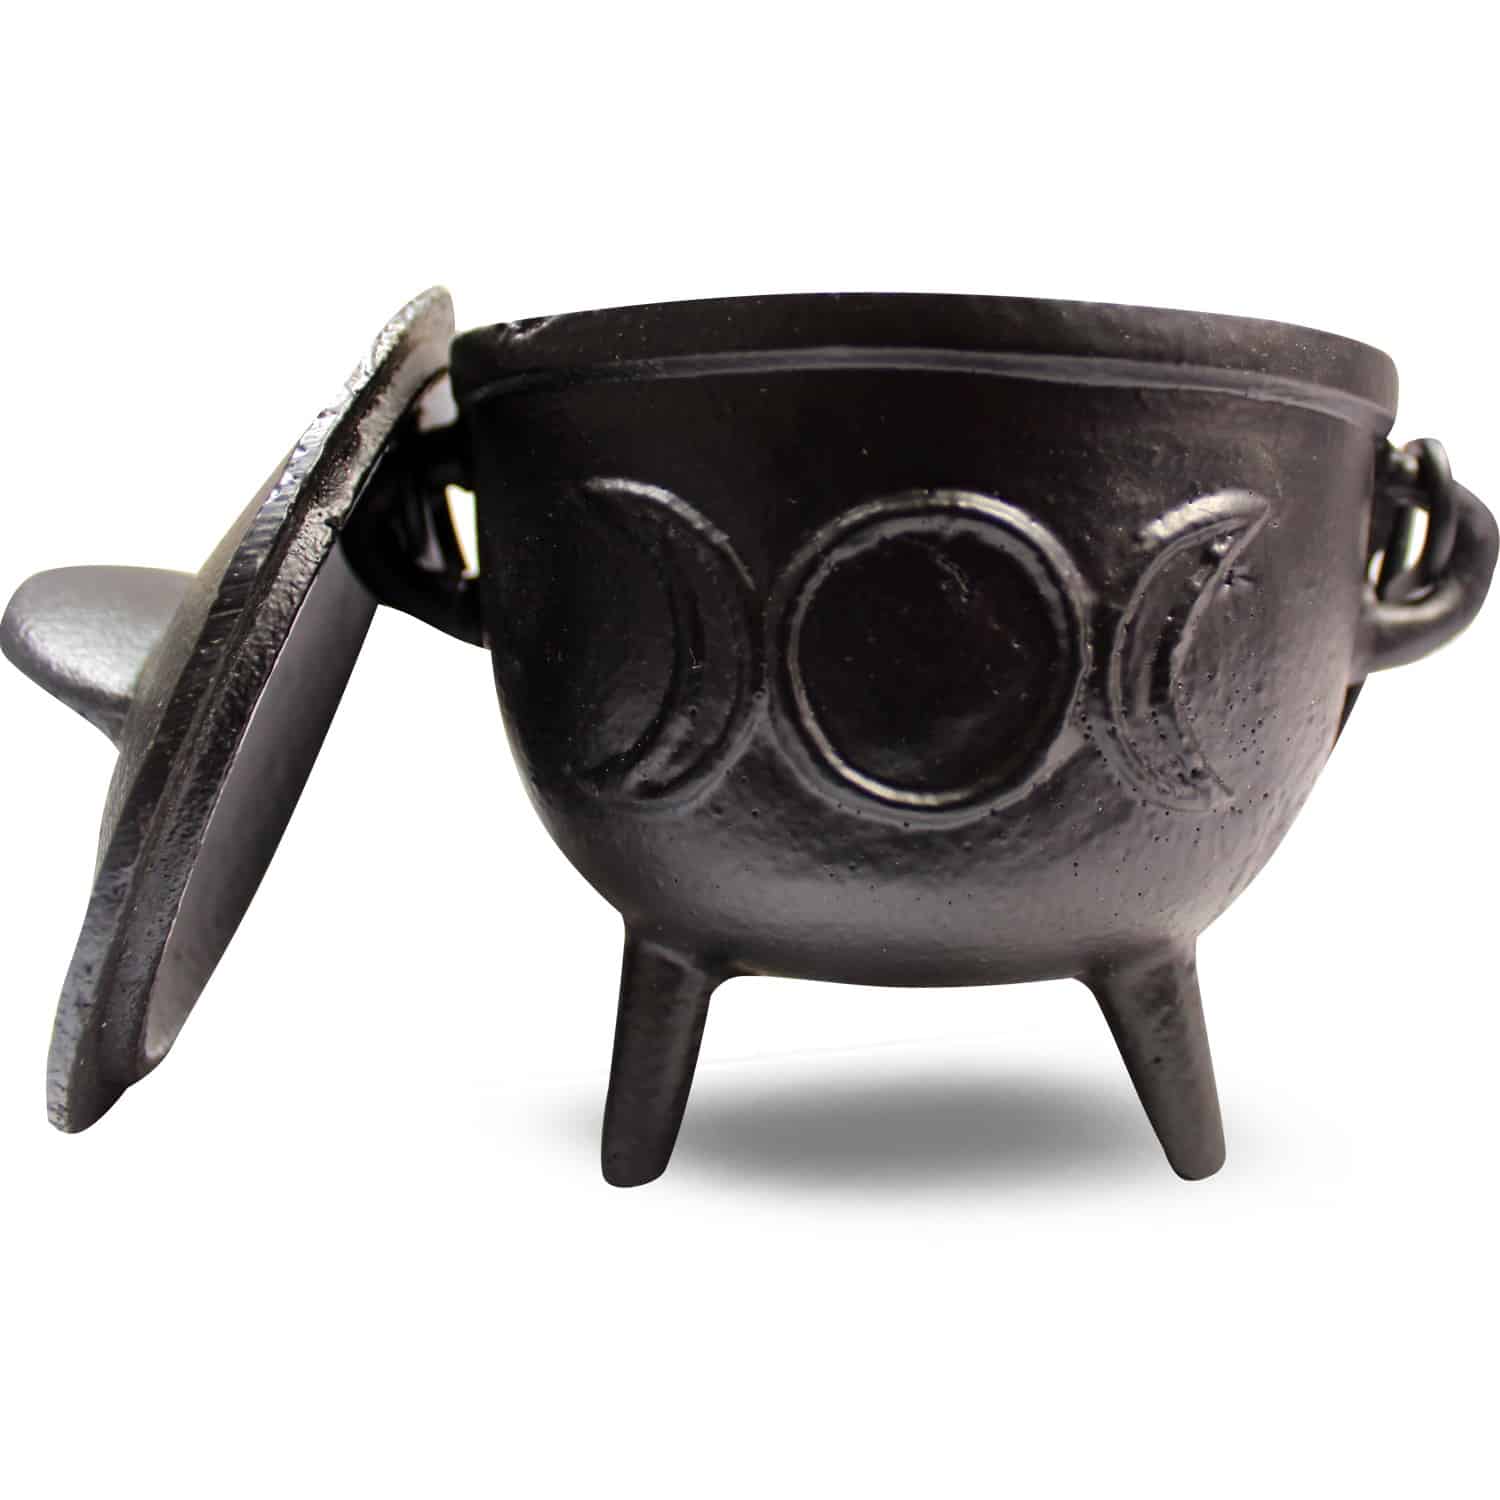 Cauldron (Heksenketeltje) Model 10